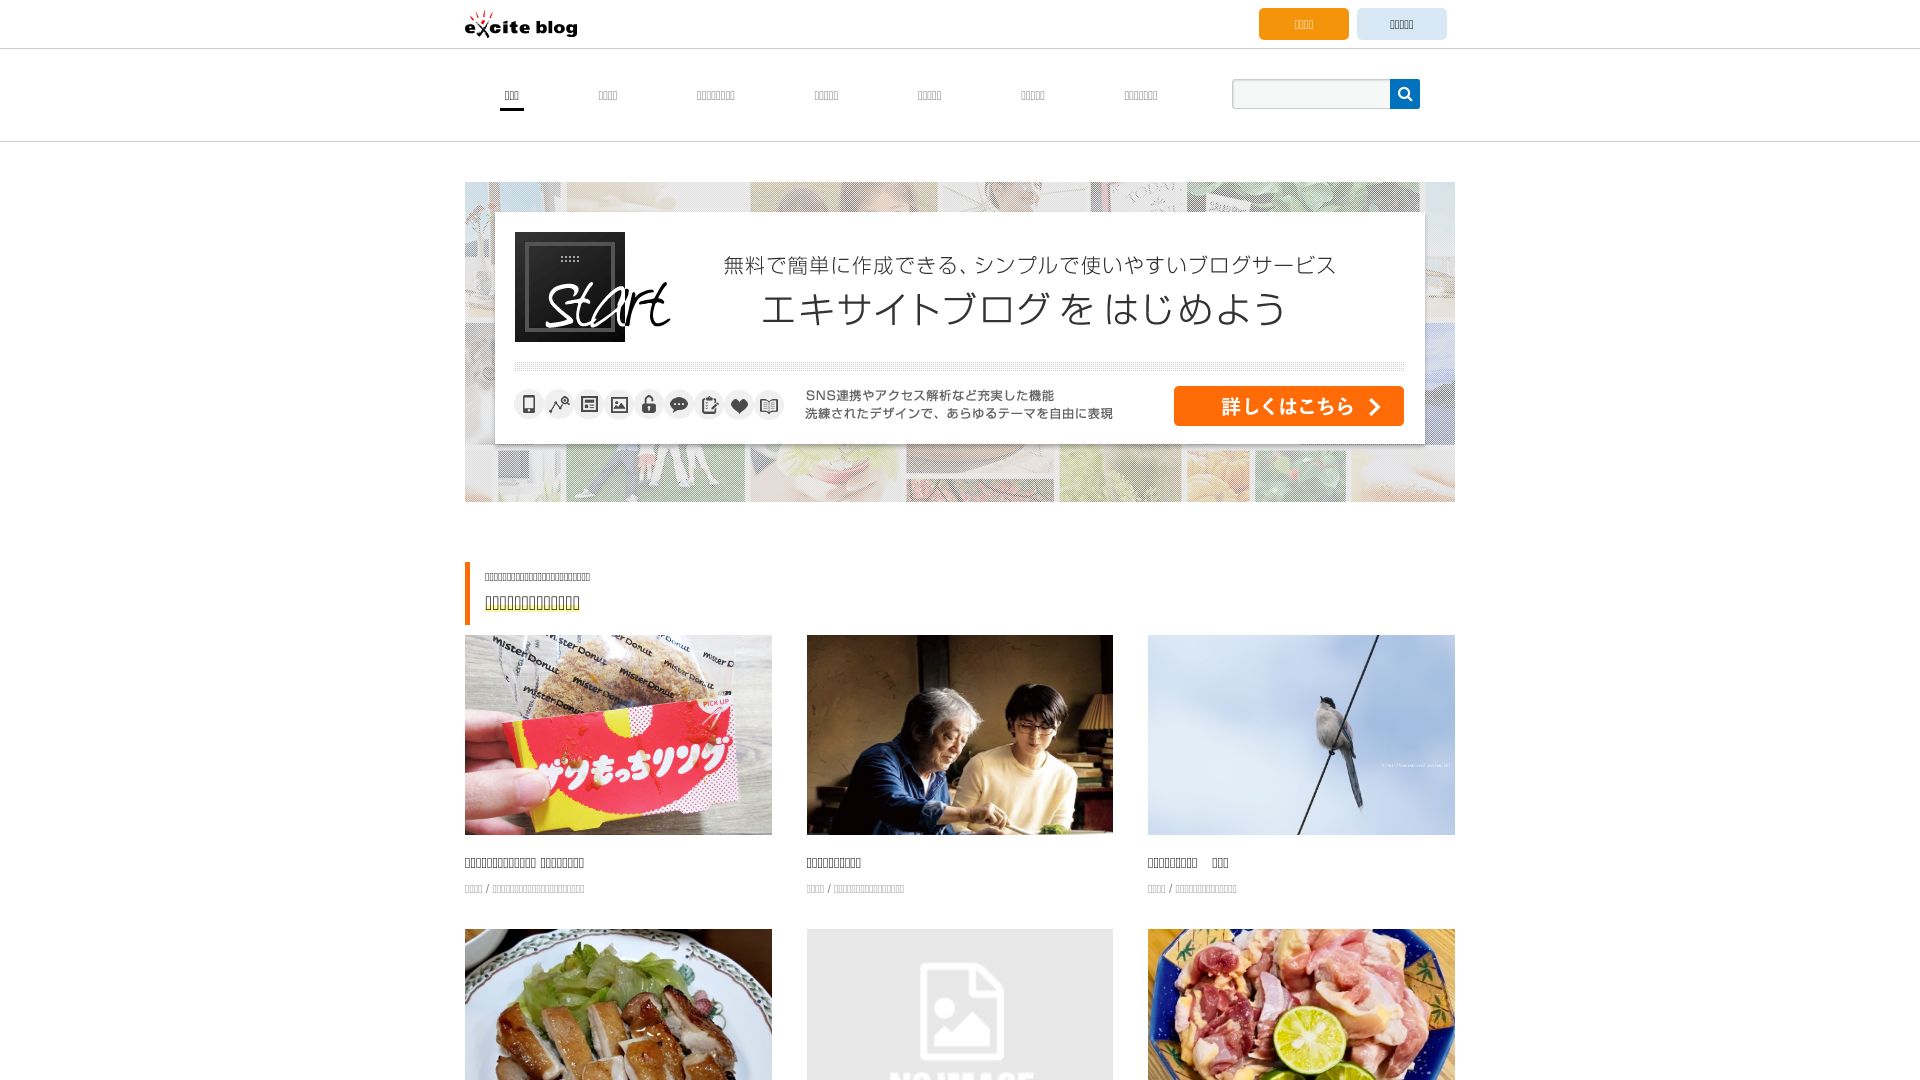 Stato del sito web exblog.jp è   ONLINE